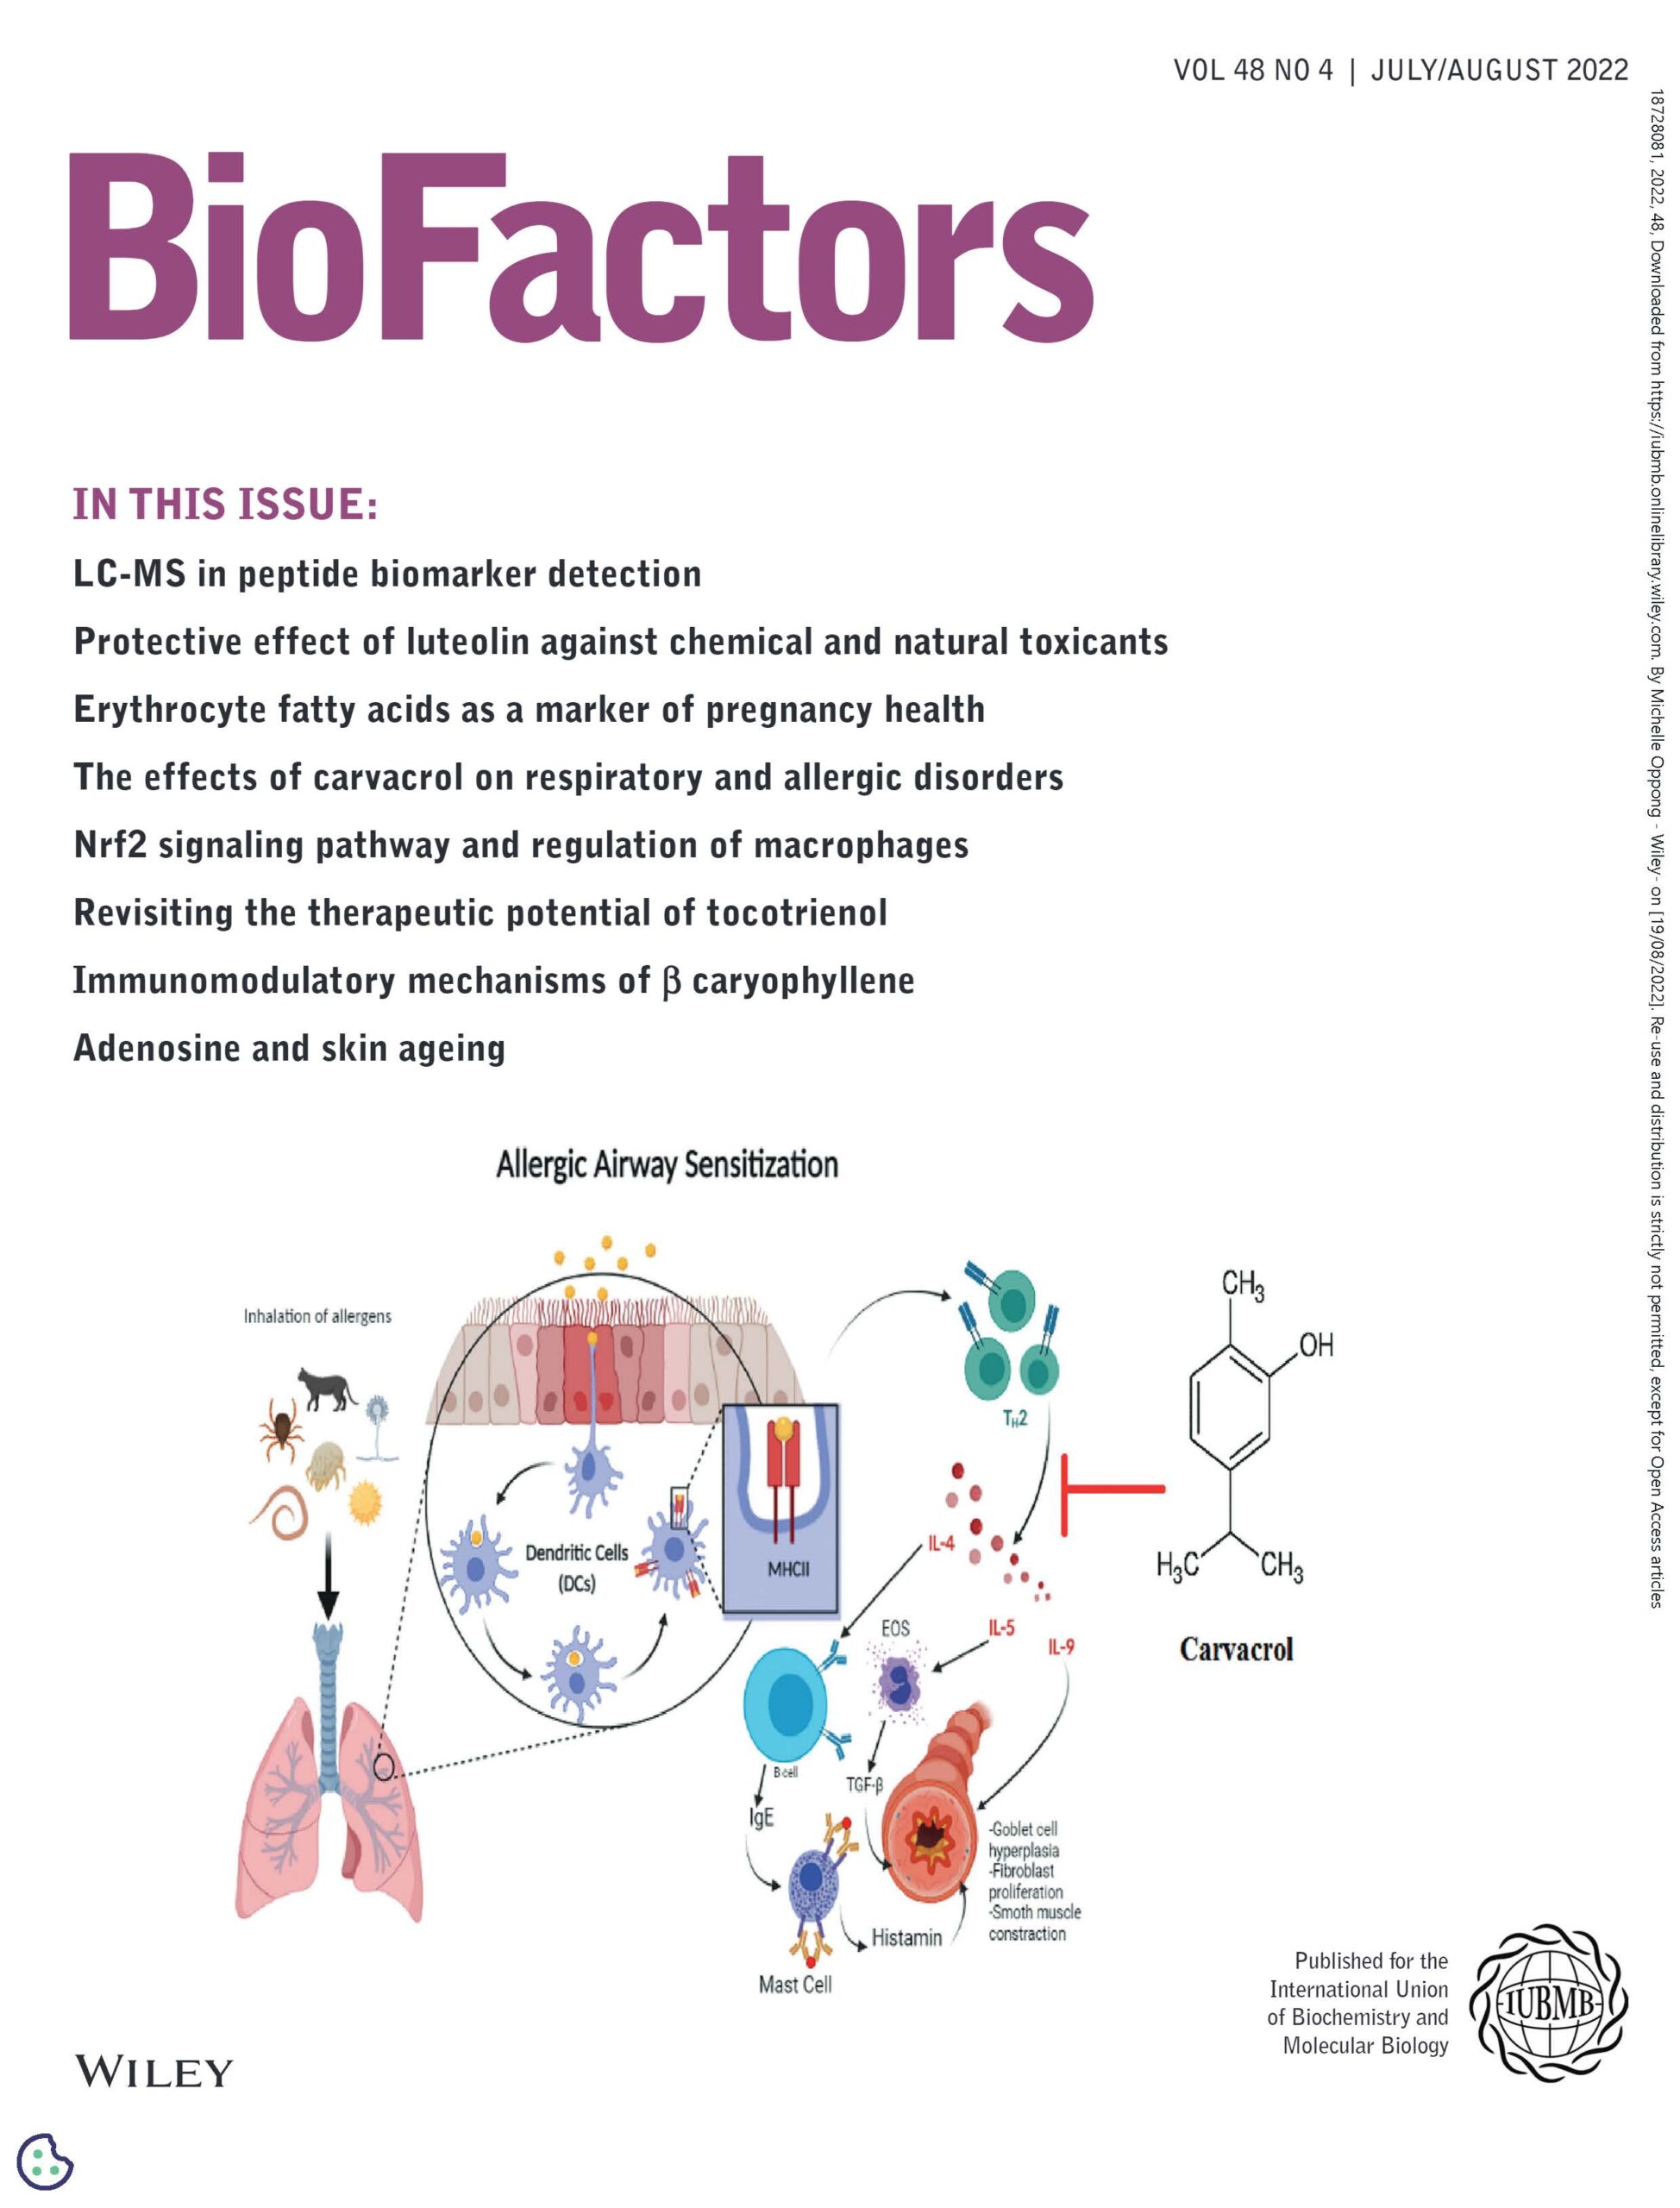 Biofactors